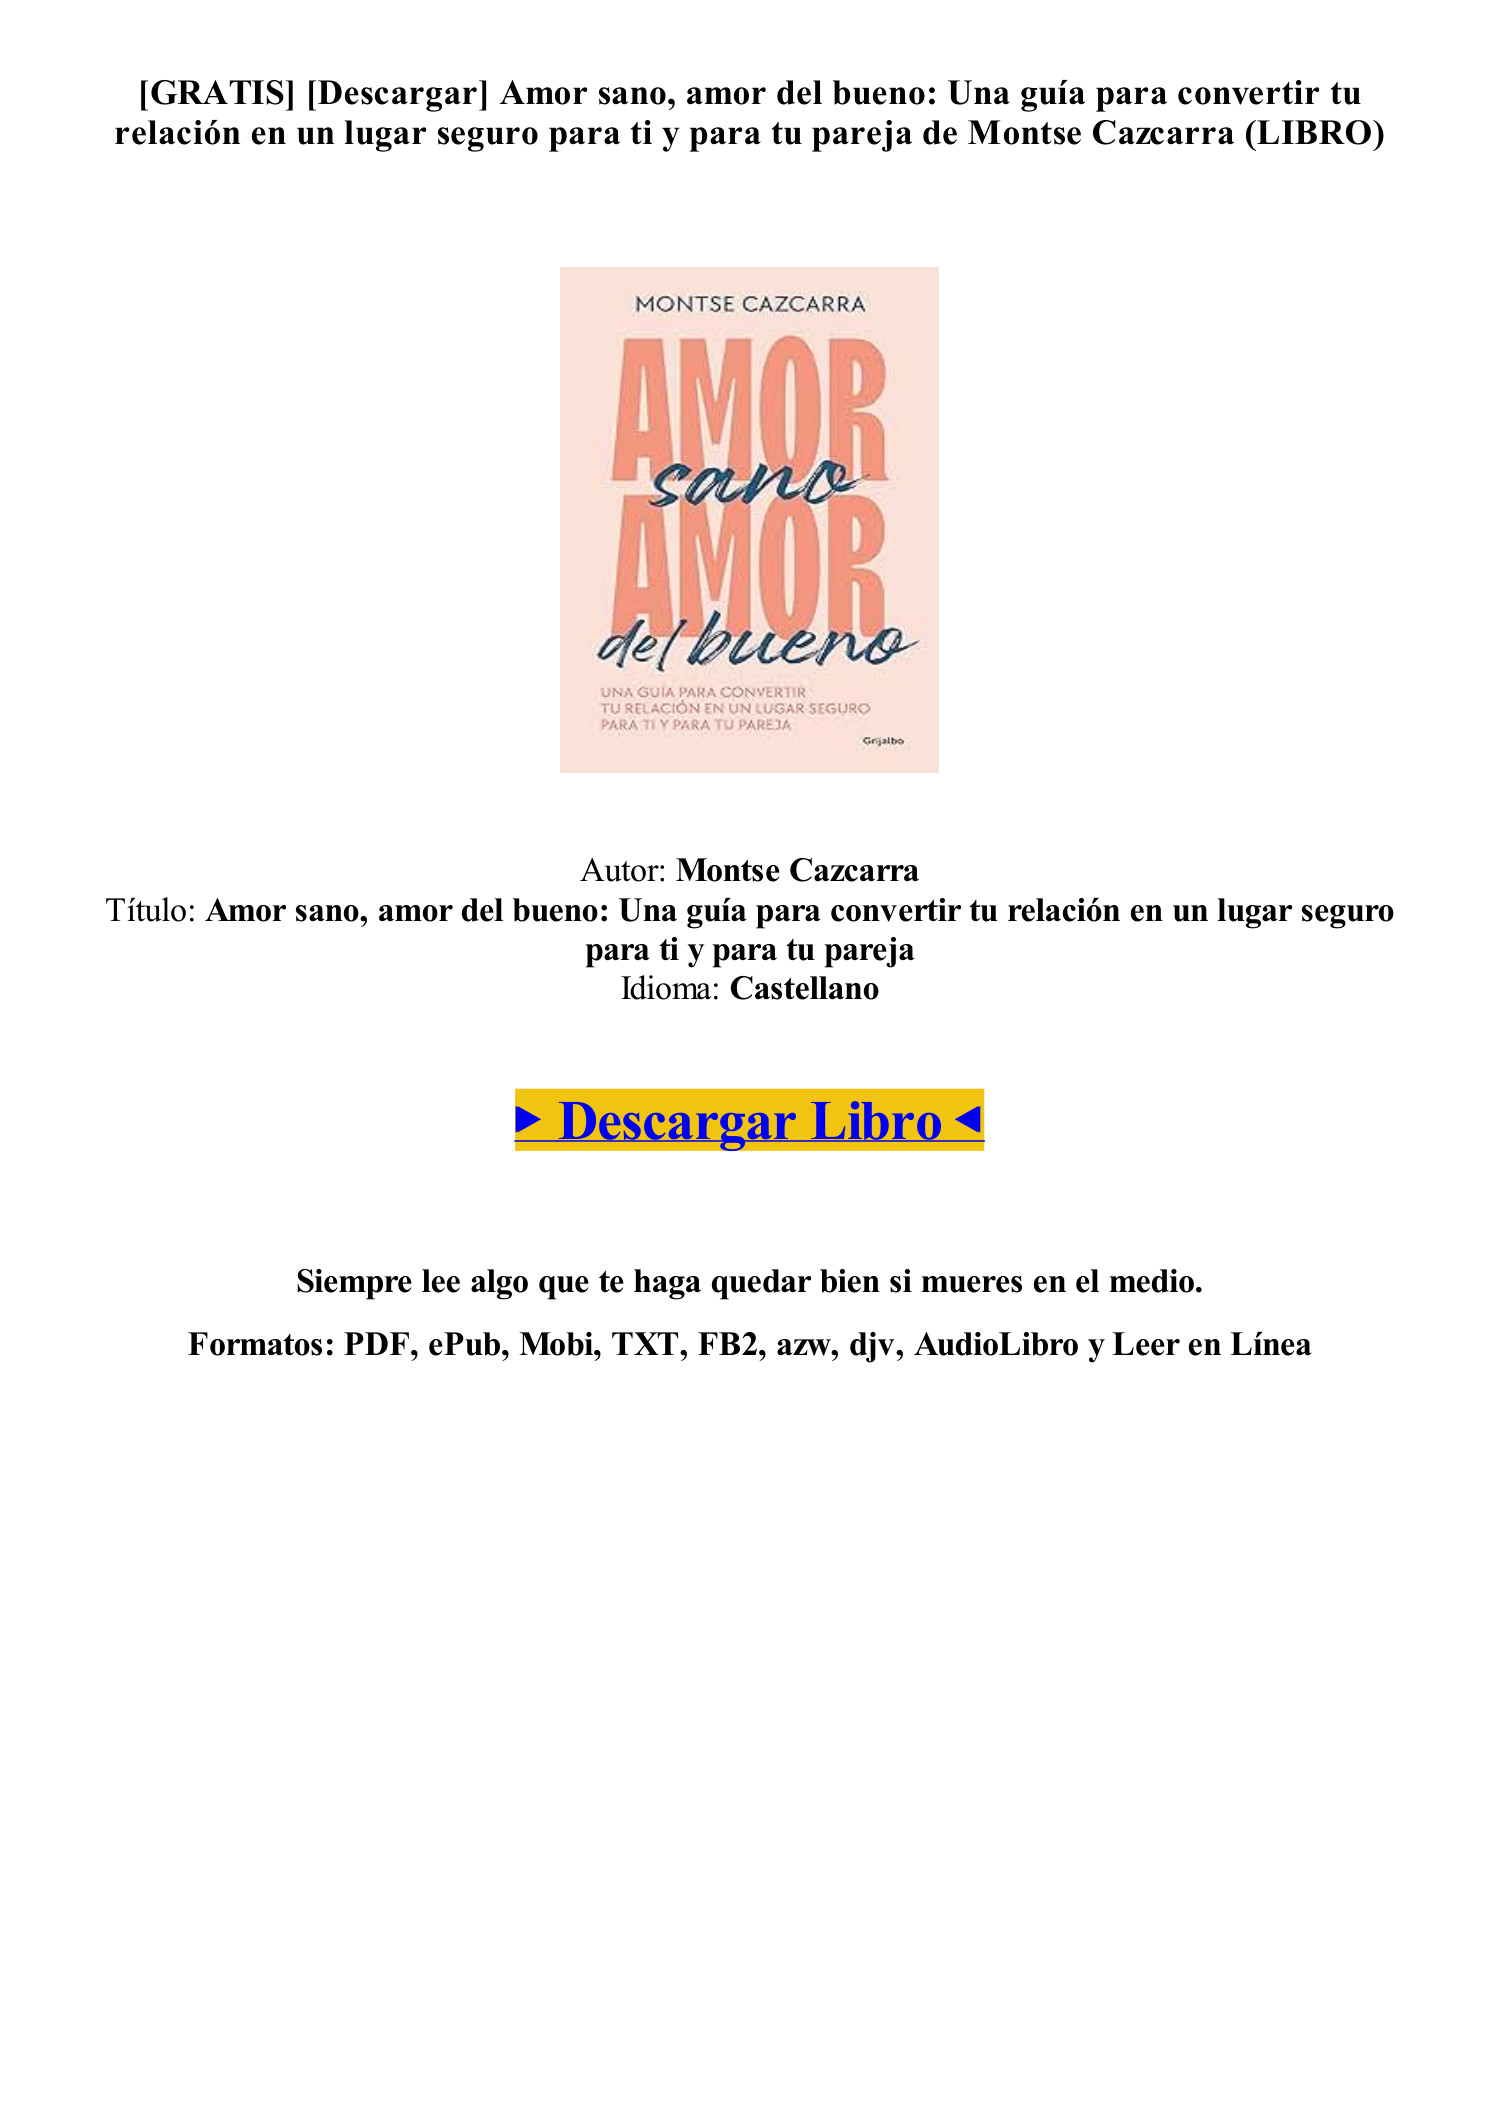 AMOR SANO, AMOR DEL BUENO, CAZCARRA, MONTSE, ISBN: 9788425364266